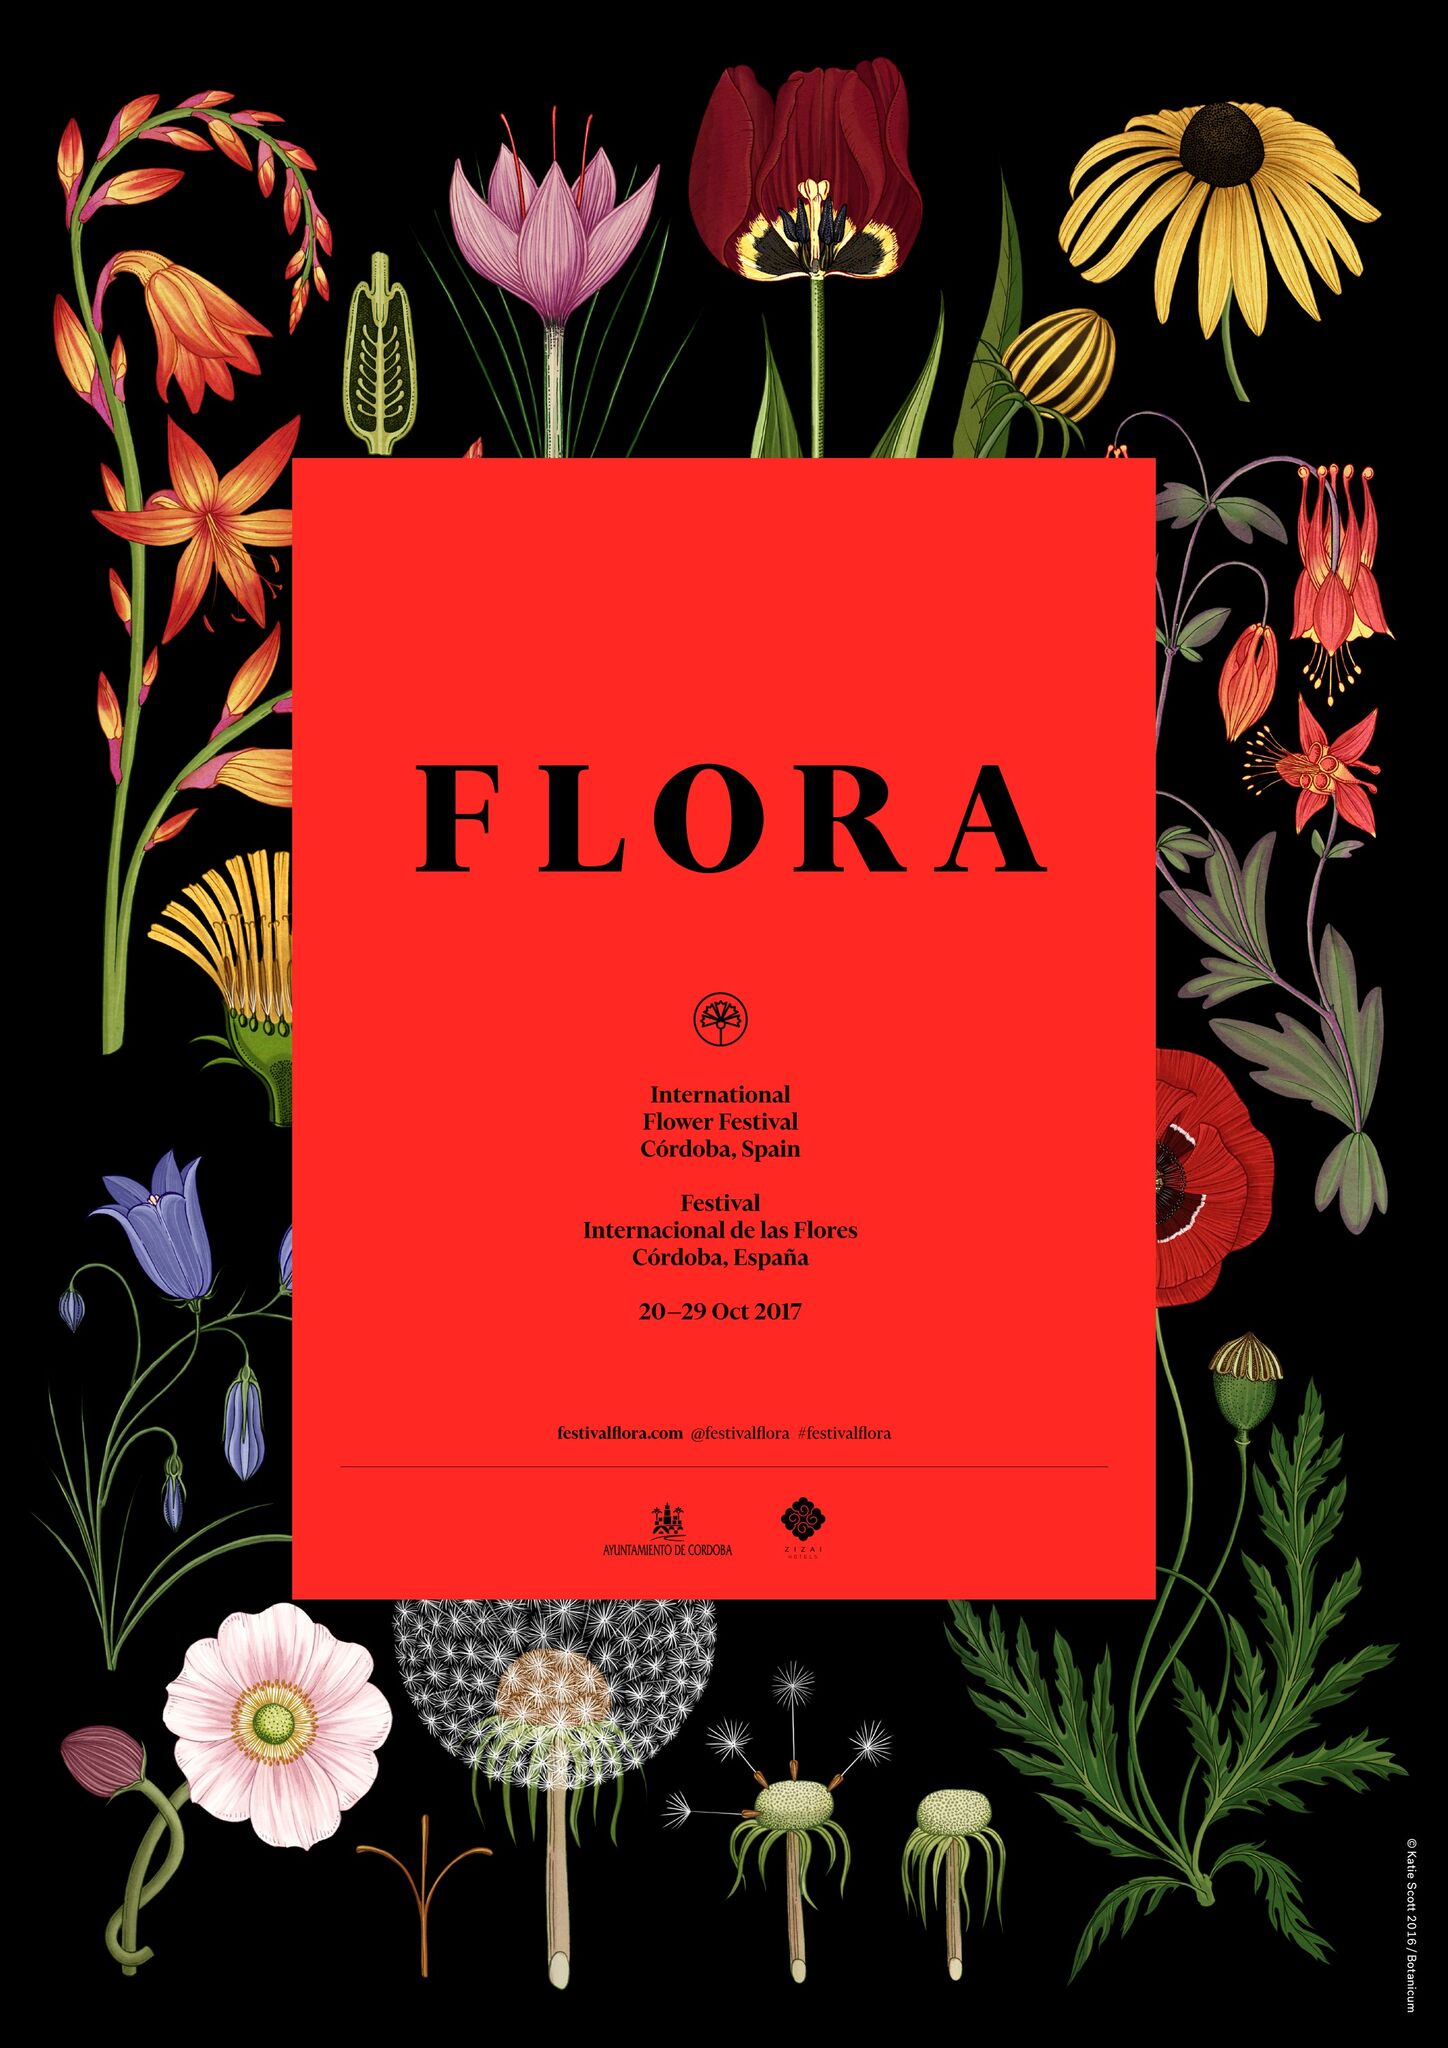 La primavera vuelve a Córdoba con Flora, el Festival Internacional de las Flores 3